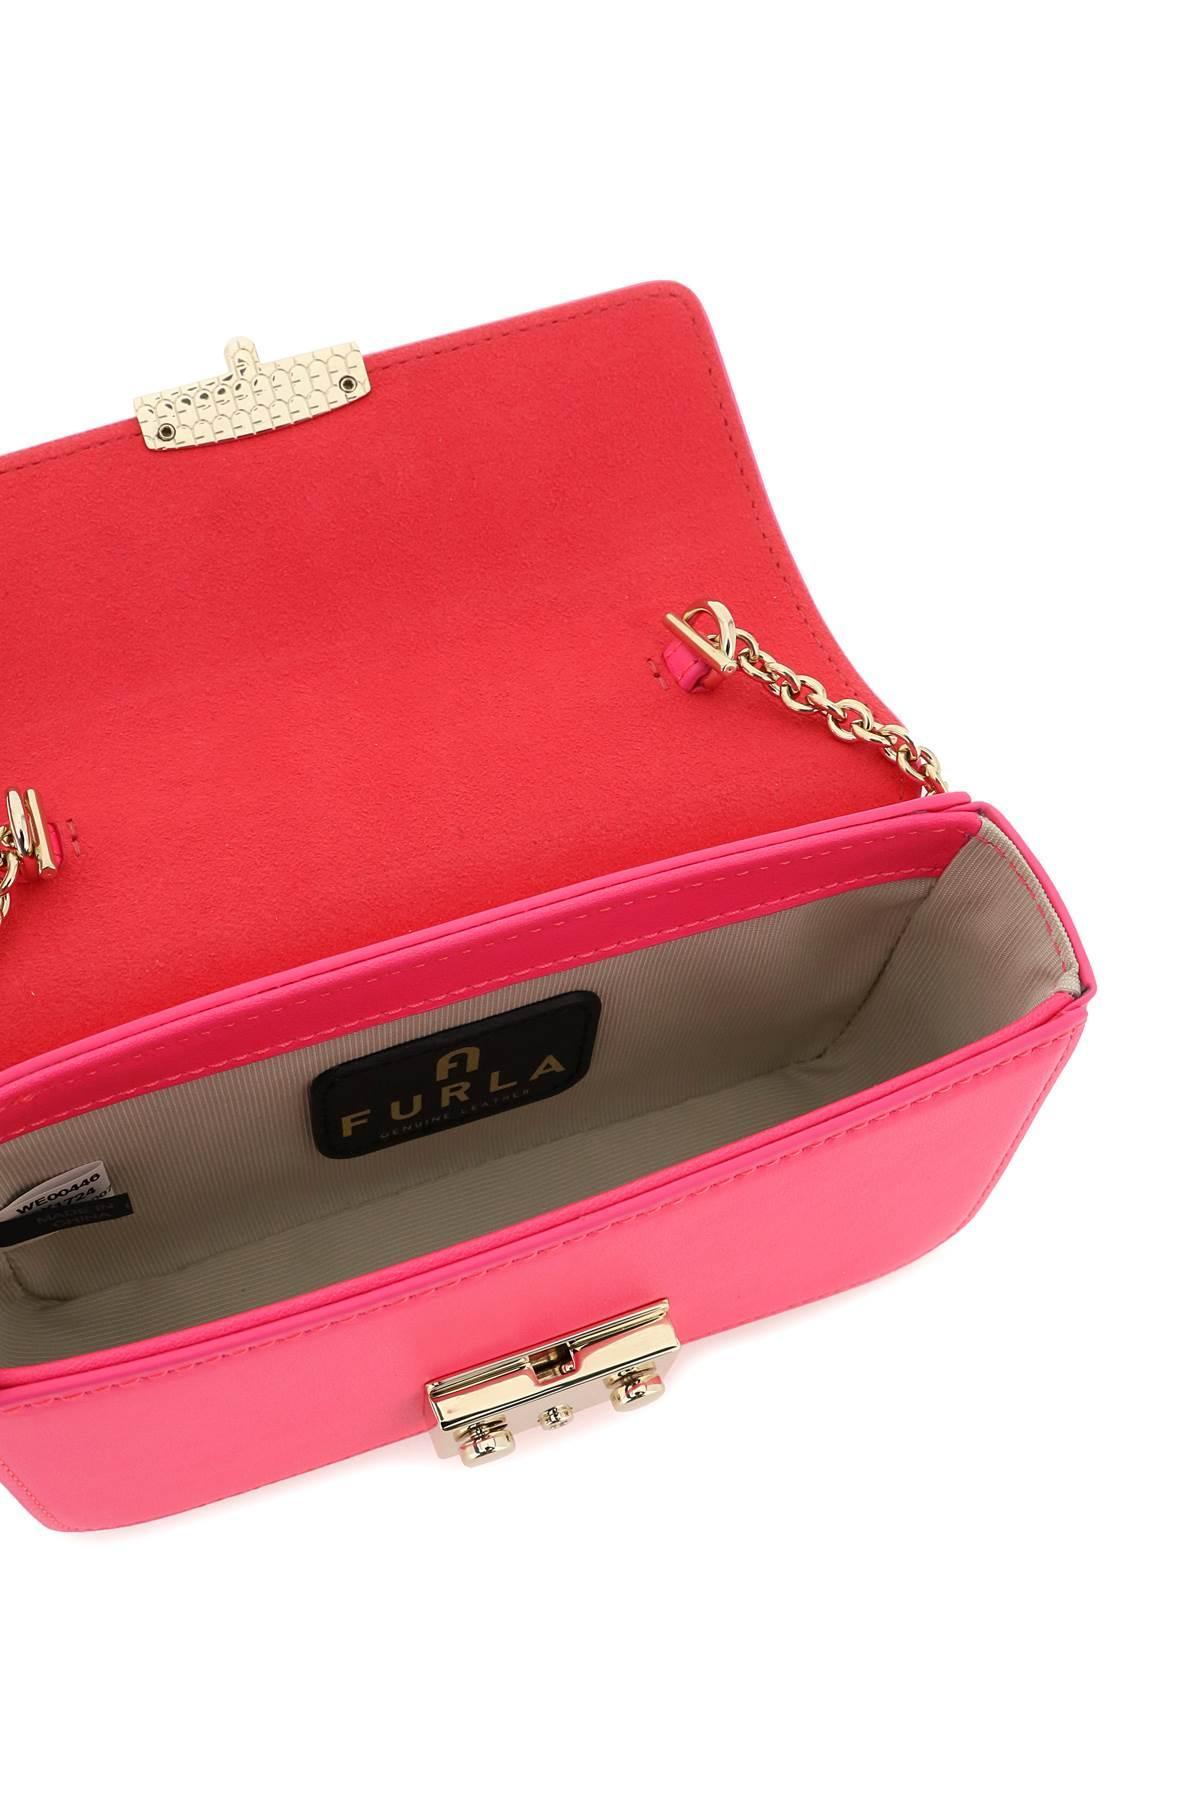 Furla Metropolis Mini Crossbody Bag in Pink | Lyst